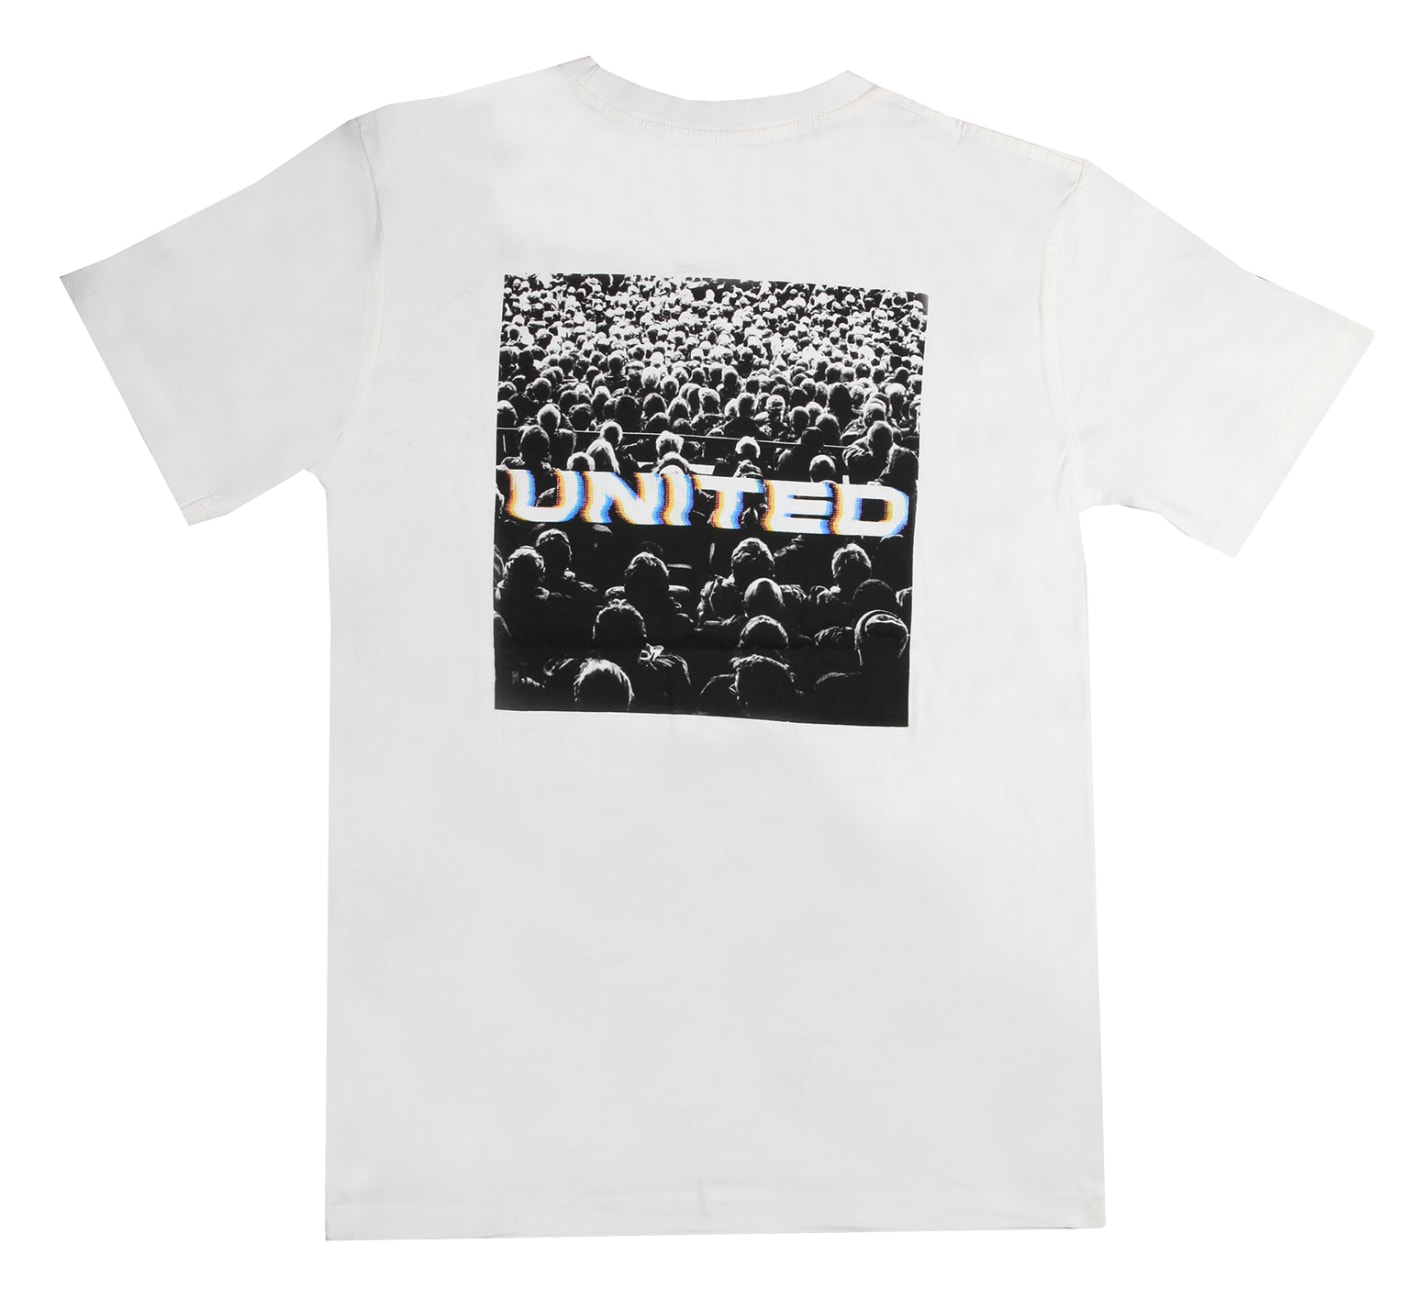 T-Shirt: People United Xxlarge White Clothing